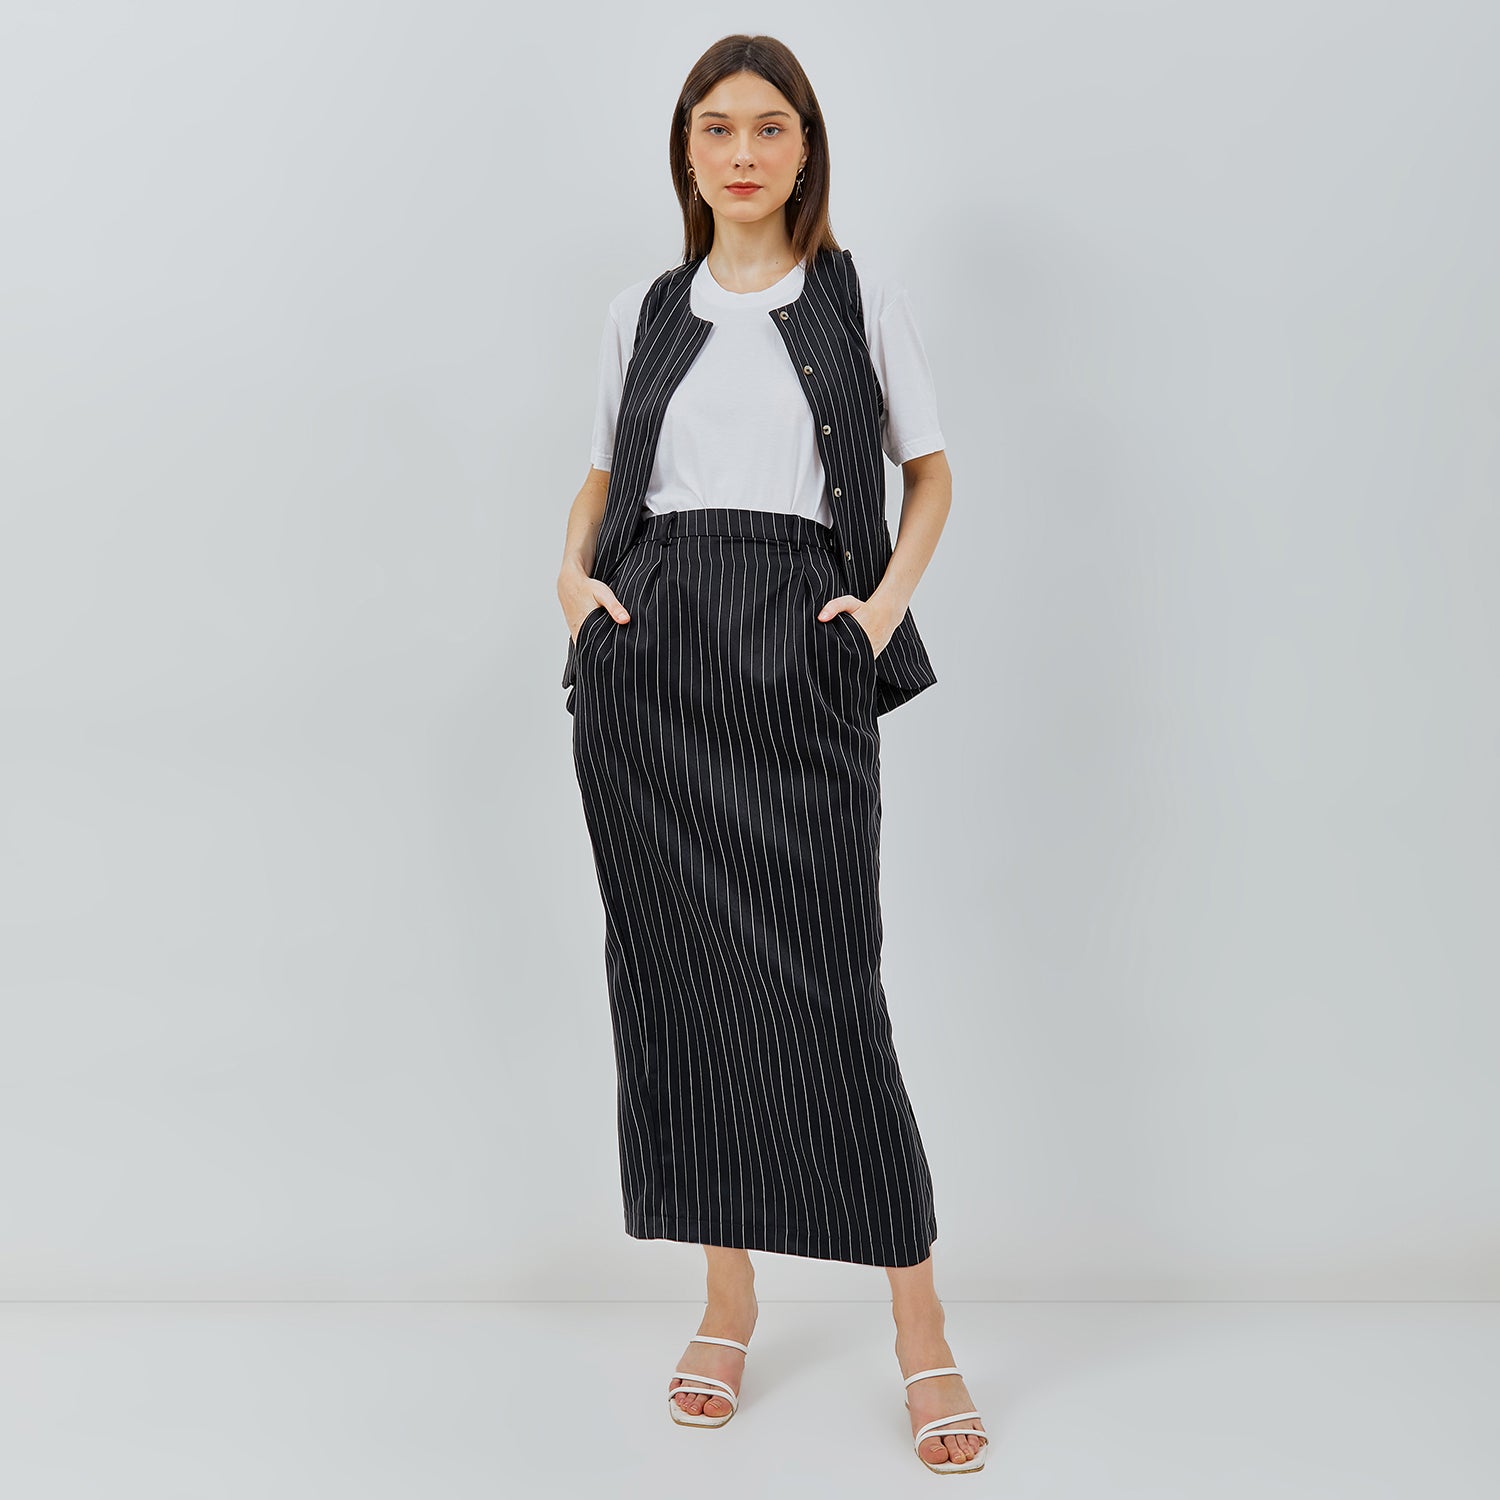 Fora Skirt Black White Stripes